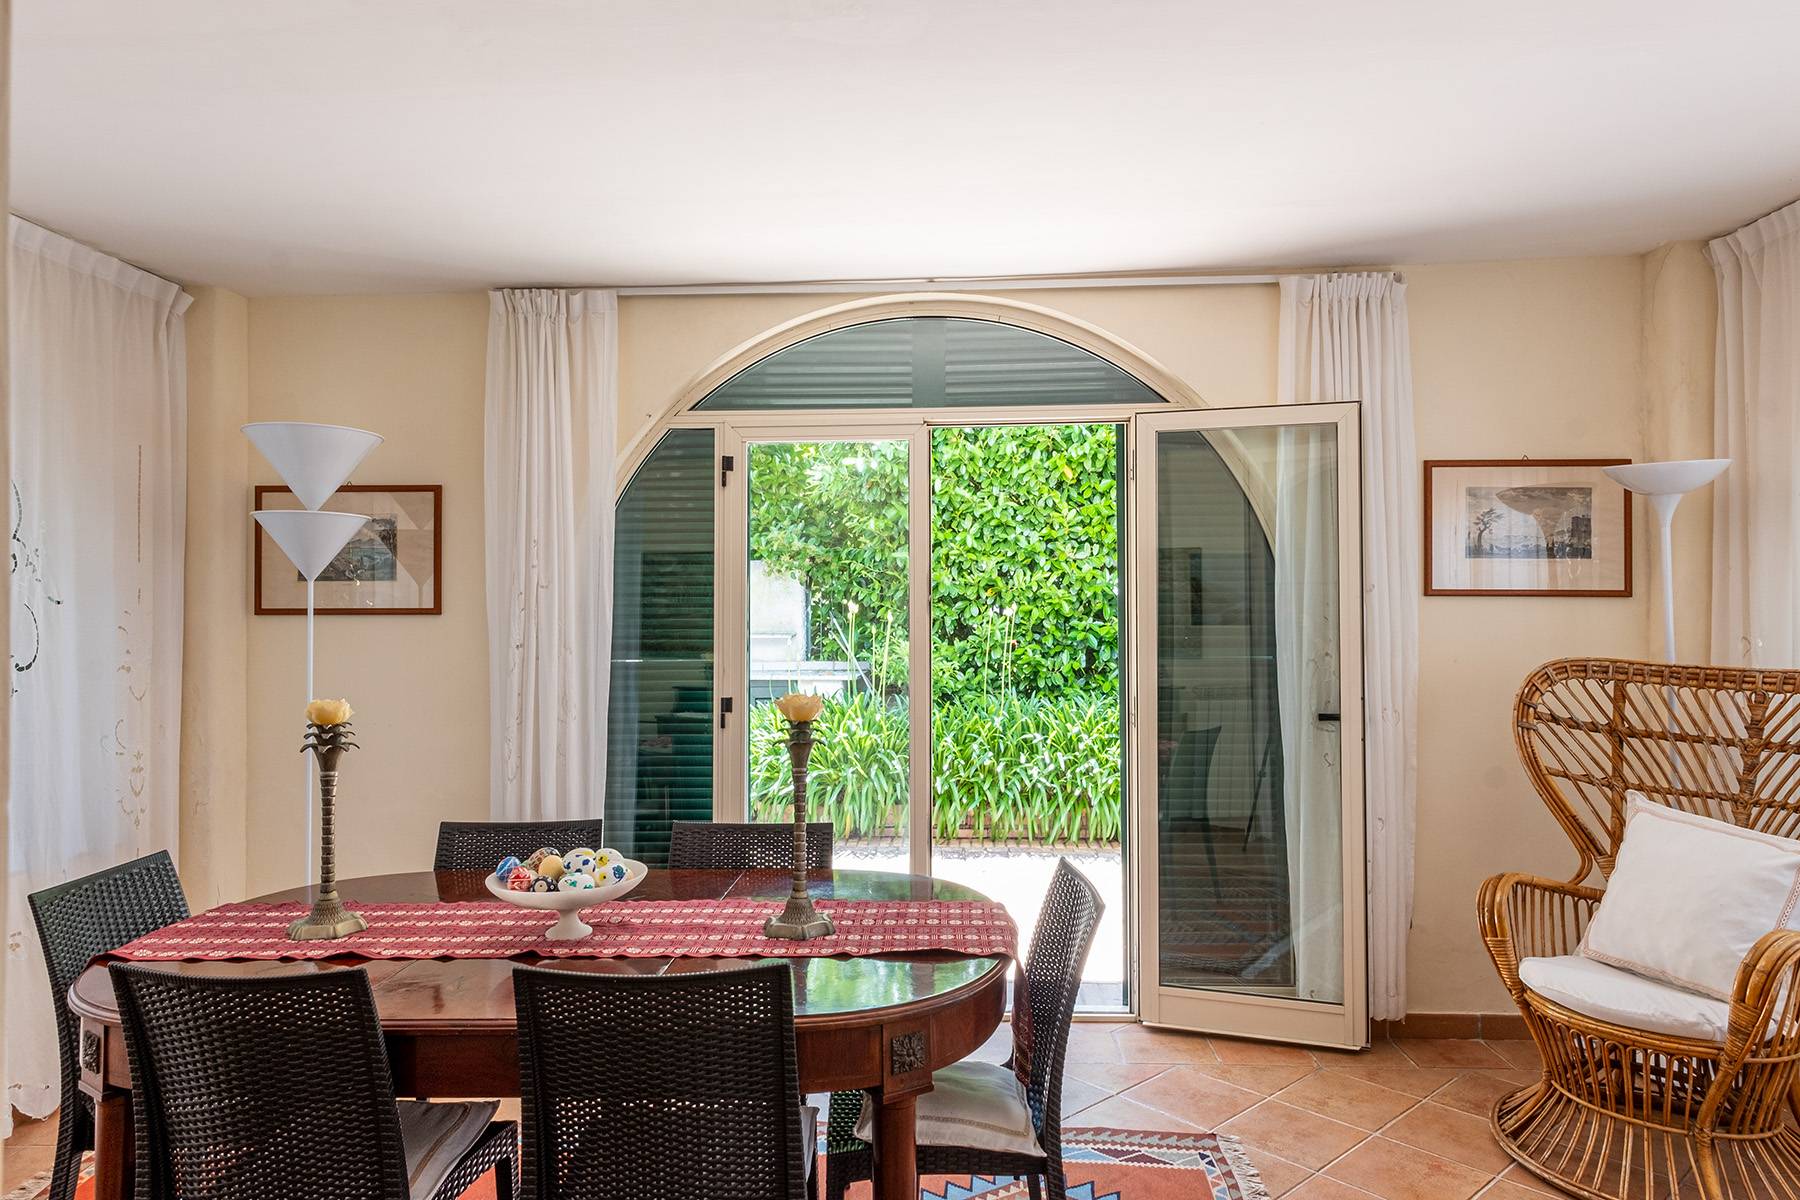 Villa in Vendita a Capri: 5 locali, 300 mq - Foto 14